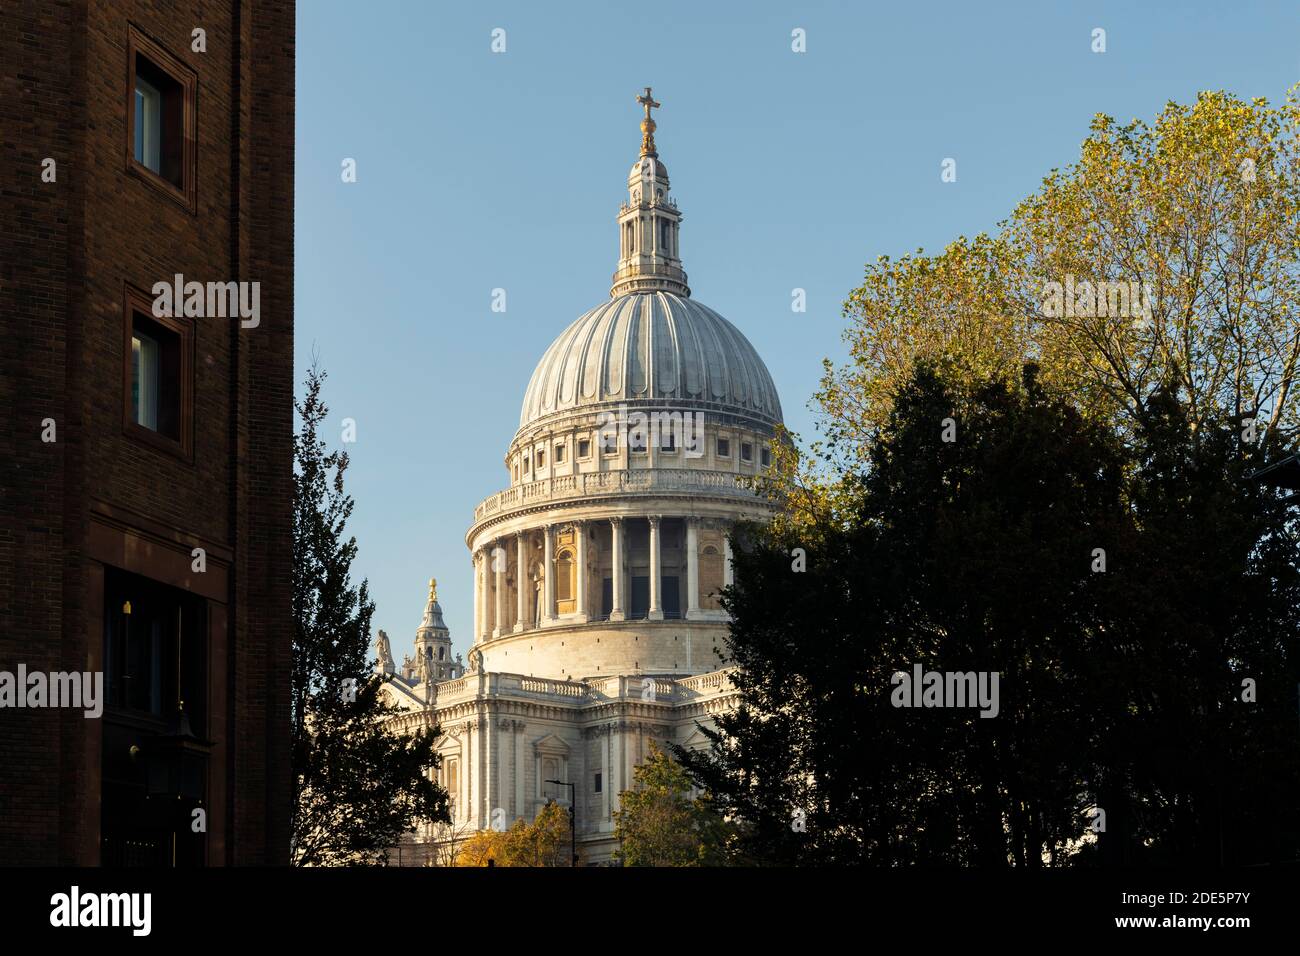 St Pauls Cathedral, eine beliebte Touristenattraktion in London und Wahrzeichen an einem strahlend blauen Himmel im Herbst, wurde in der Coronavirus Covid-19 Pandemie-Sperre aufgenommen, als es in England, Europa, ruhig und leer war Stockfoto